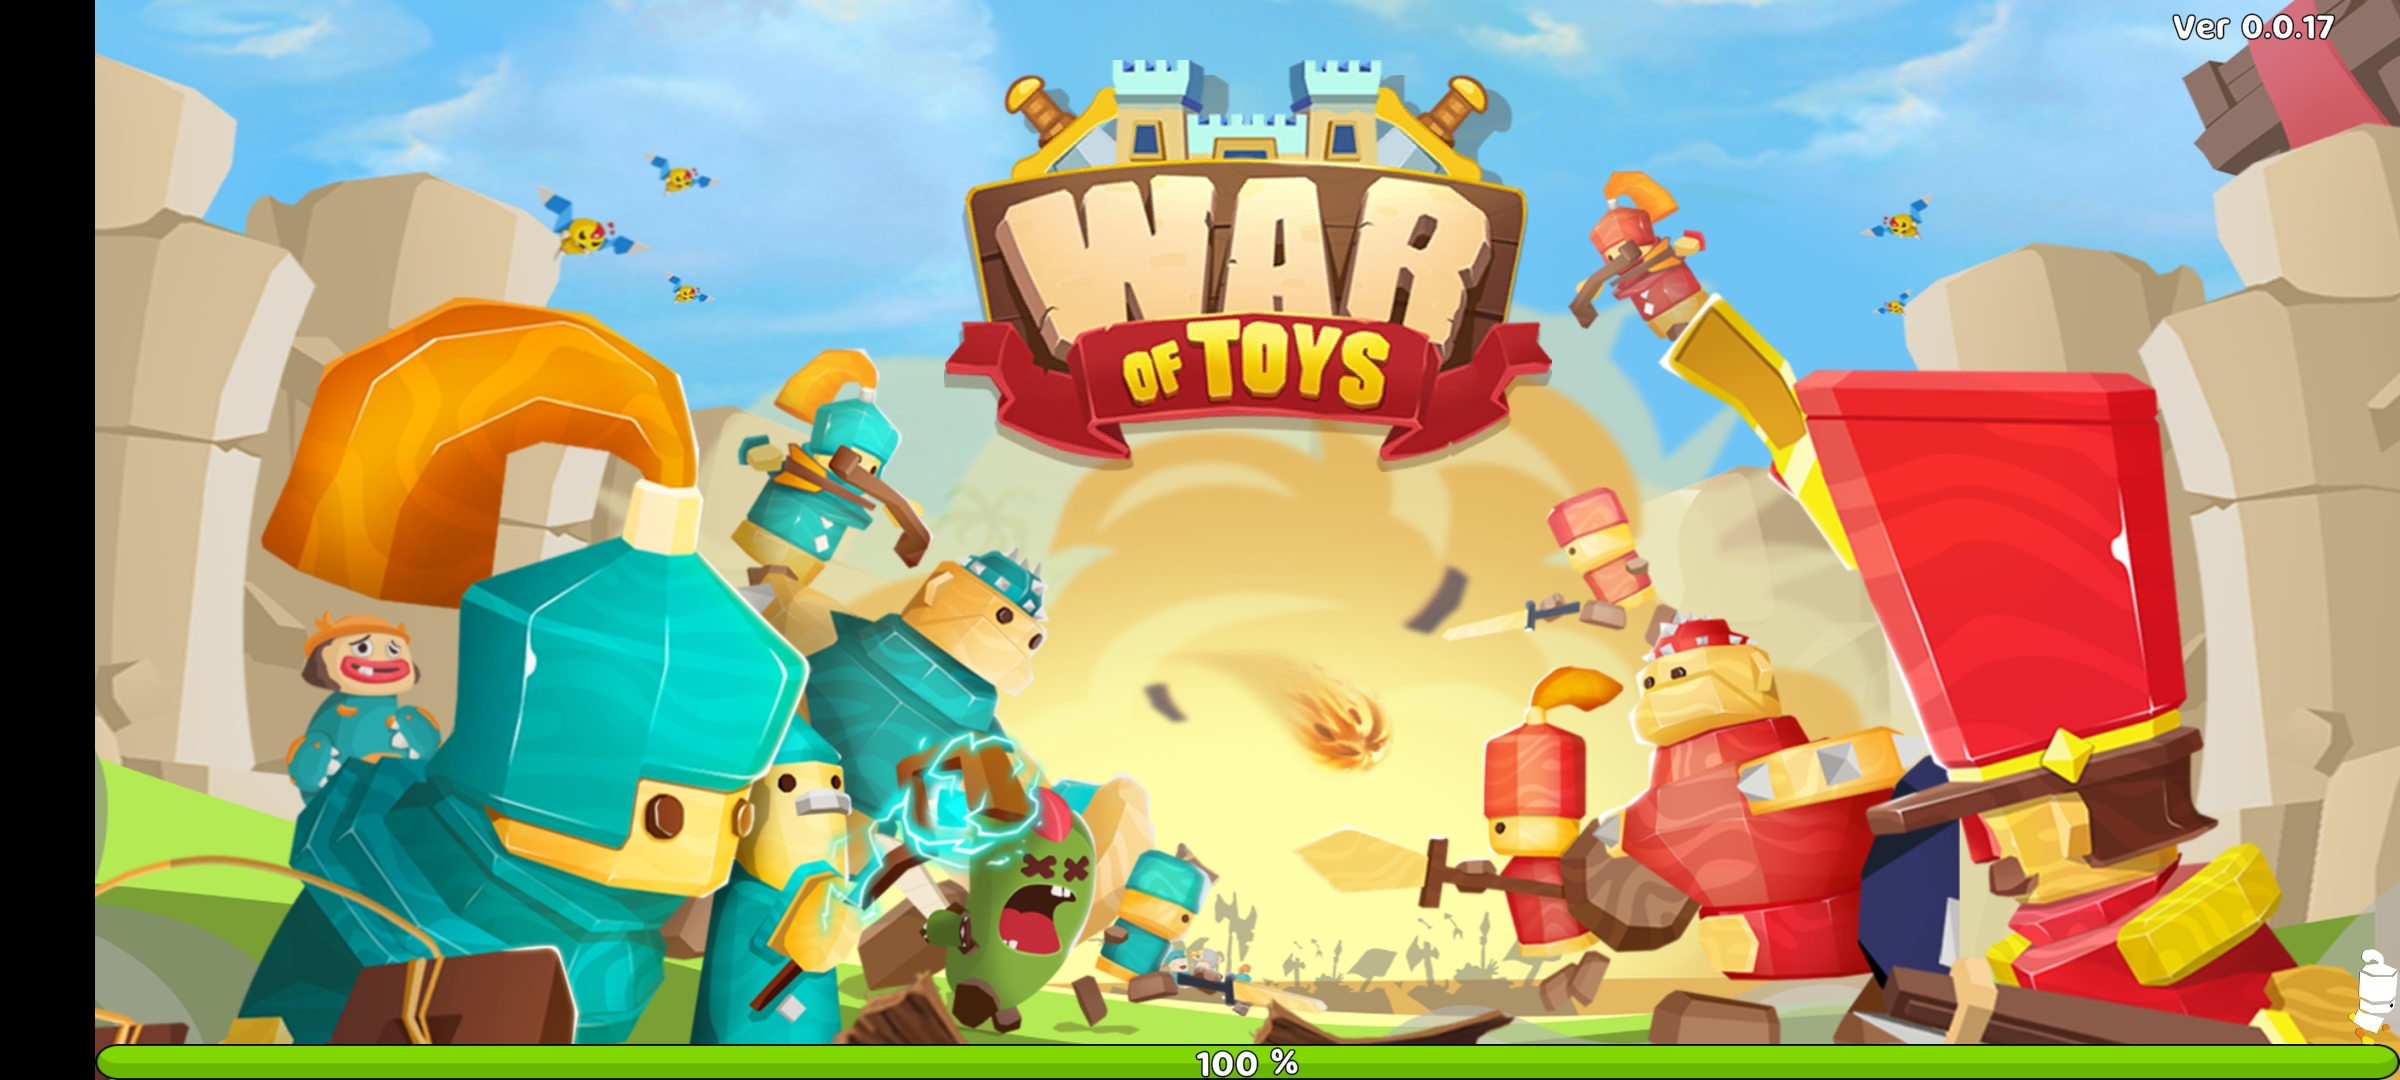 玩具战争最新版下载 v0.0.17安卓版1